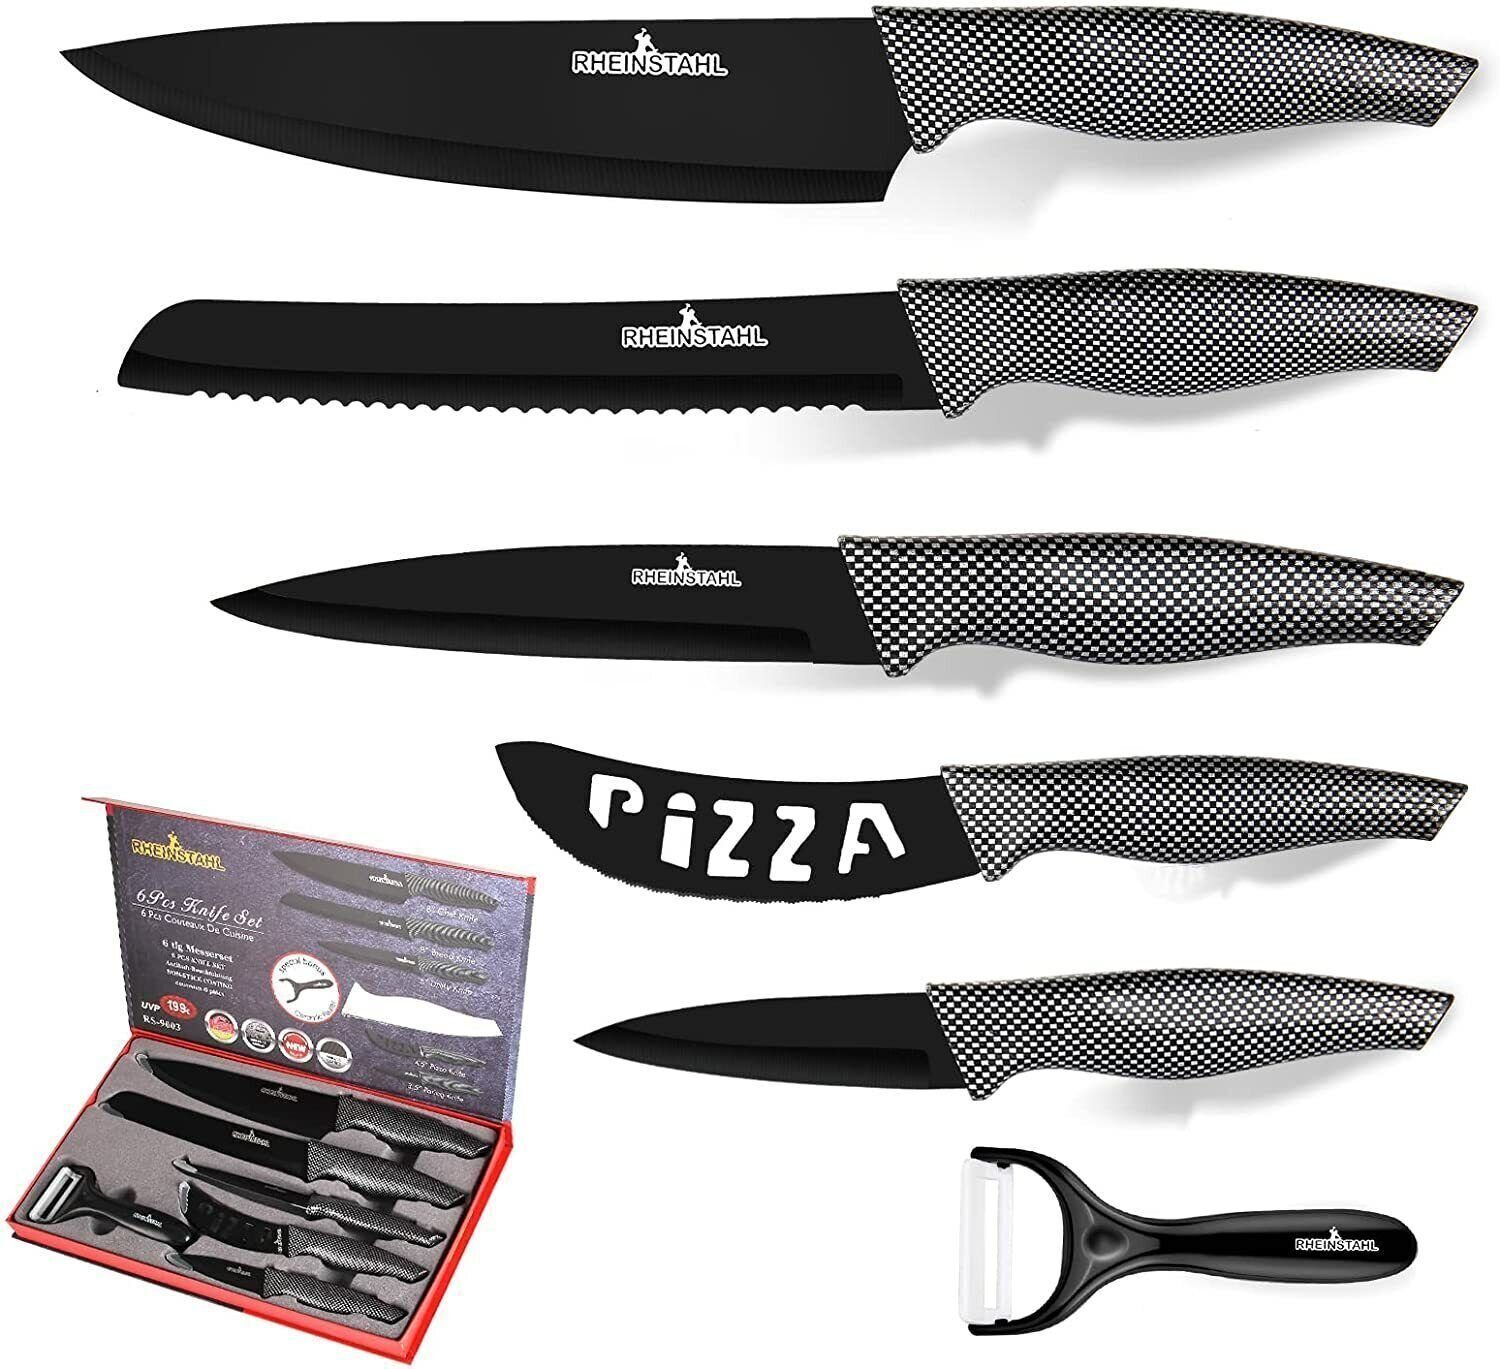 RHEINSTAHL Messer-Set 6-teilig- Edelstahl küchenmesser set mit Geschenkbox, Edelstahl + Antihaft, Profi knife set Messerset inkl. Schäler Schwarz-Weiß-Raster